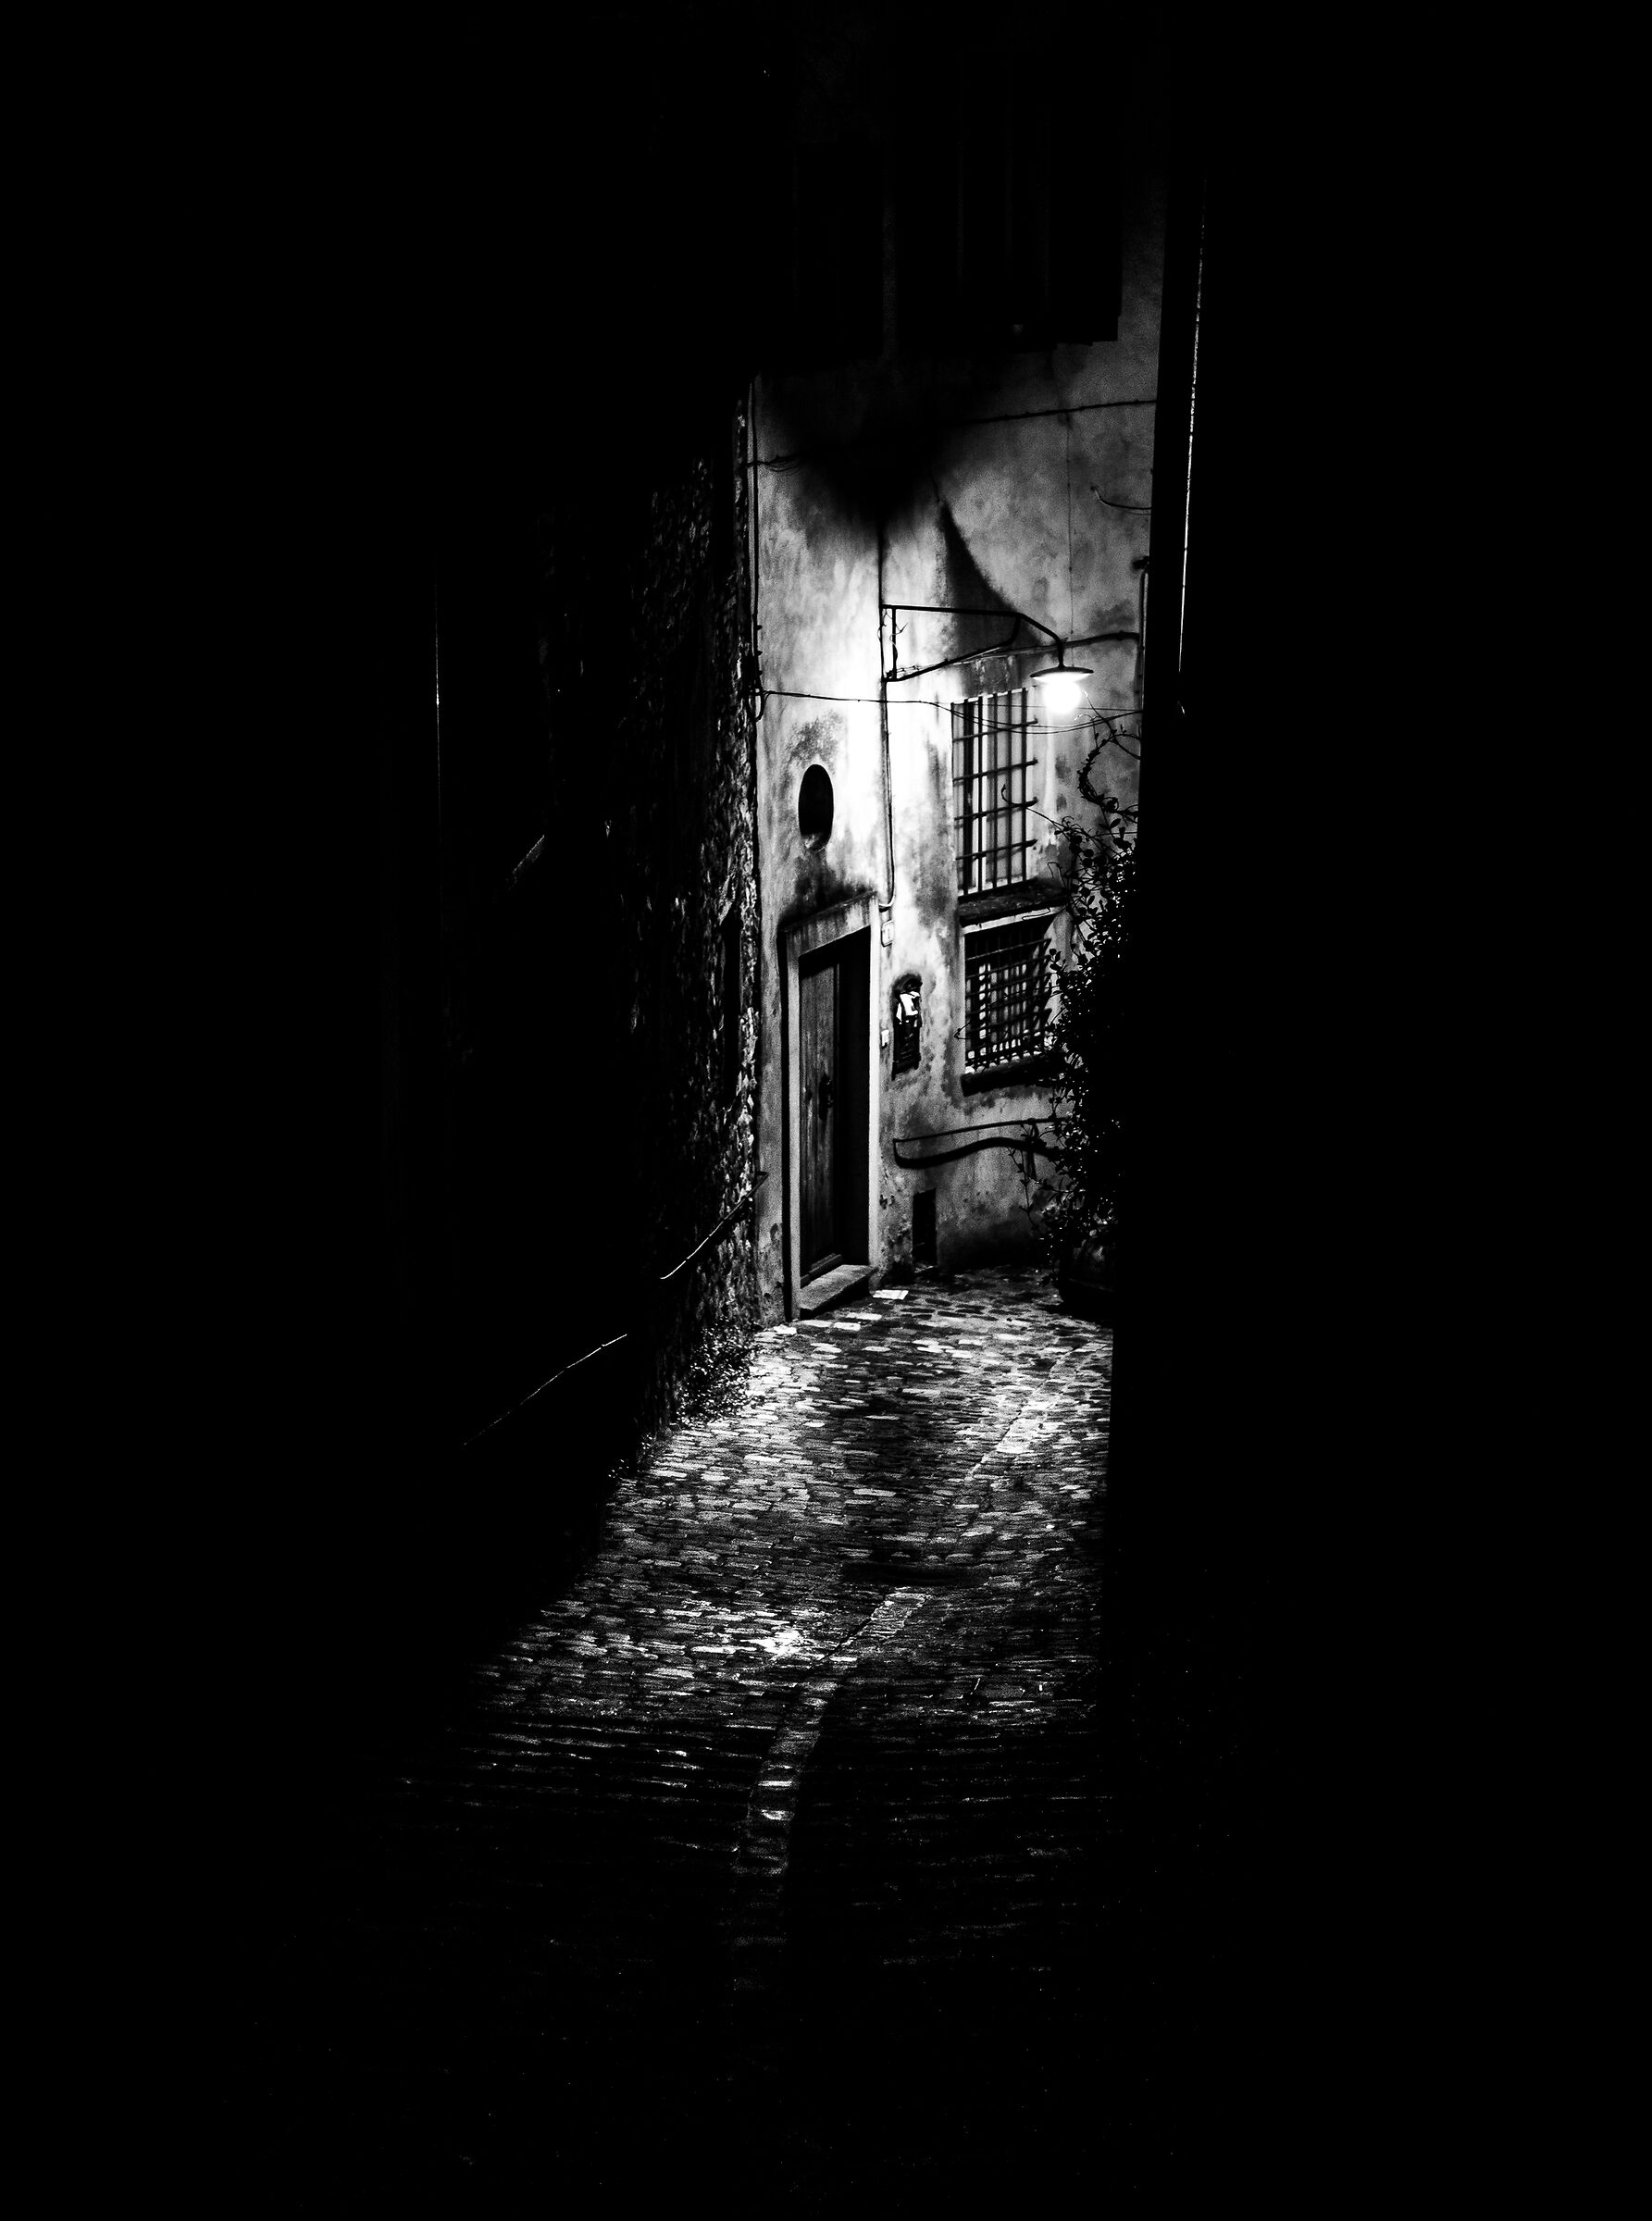 The dark alley...